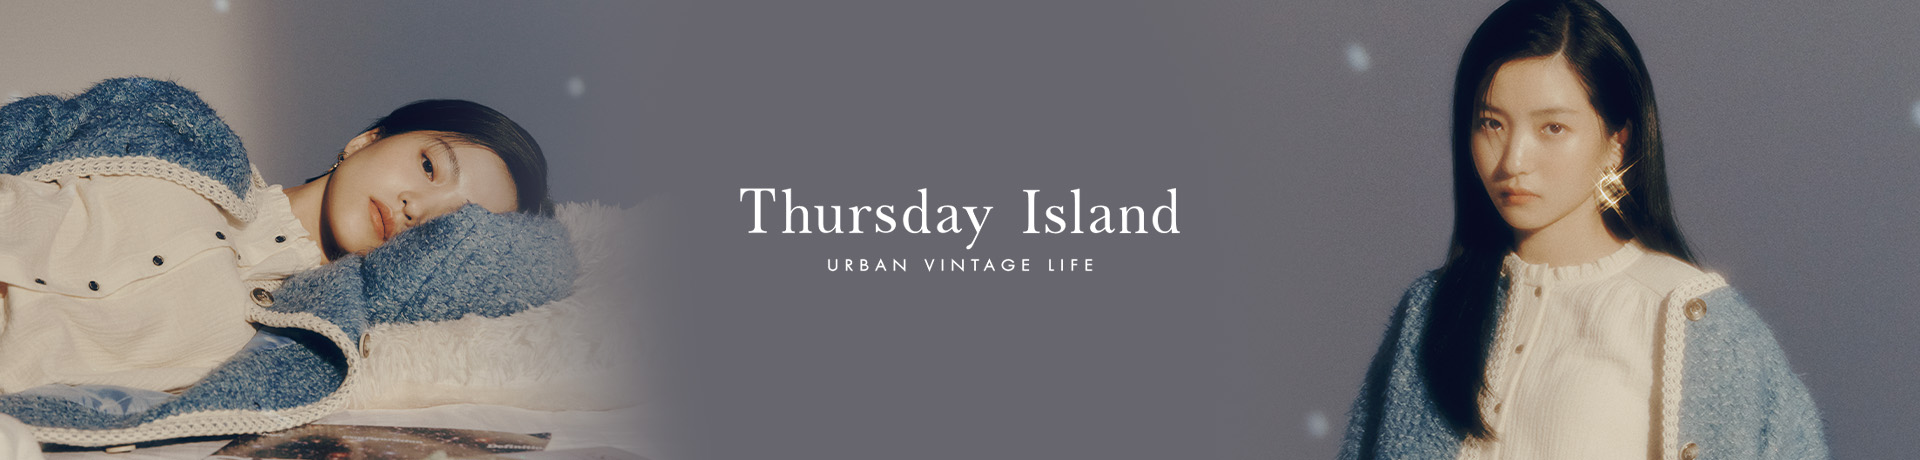 Thursday Island